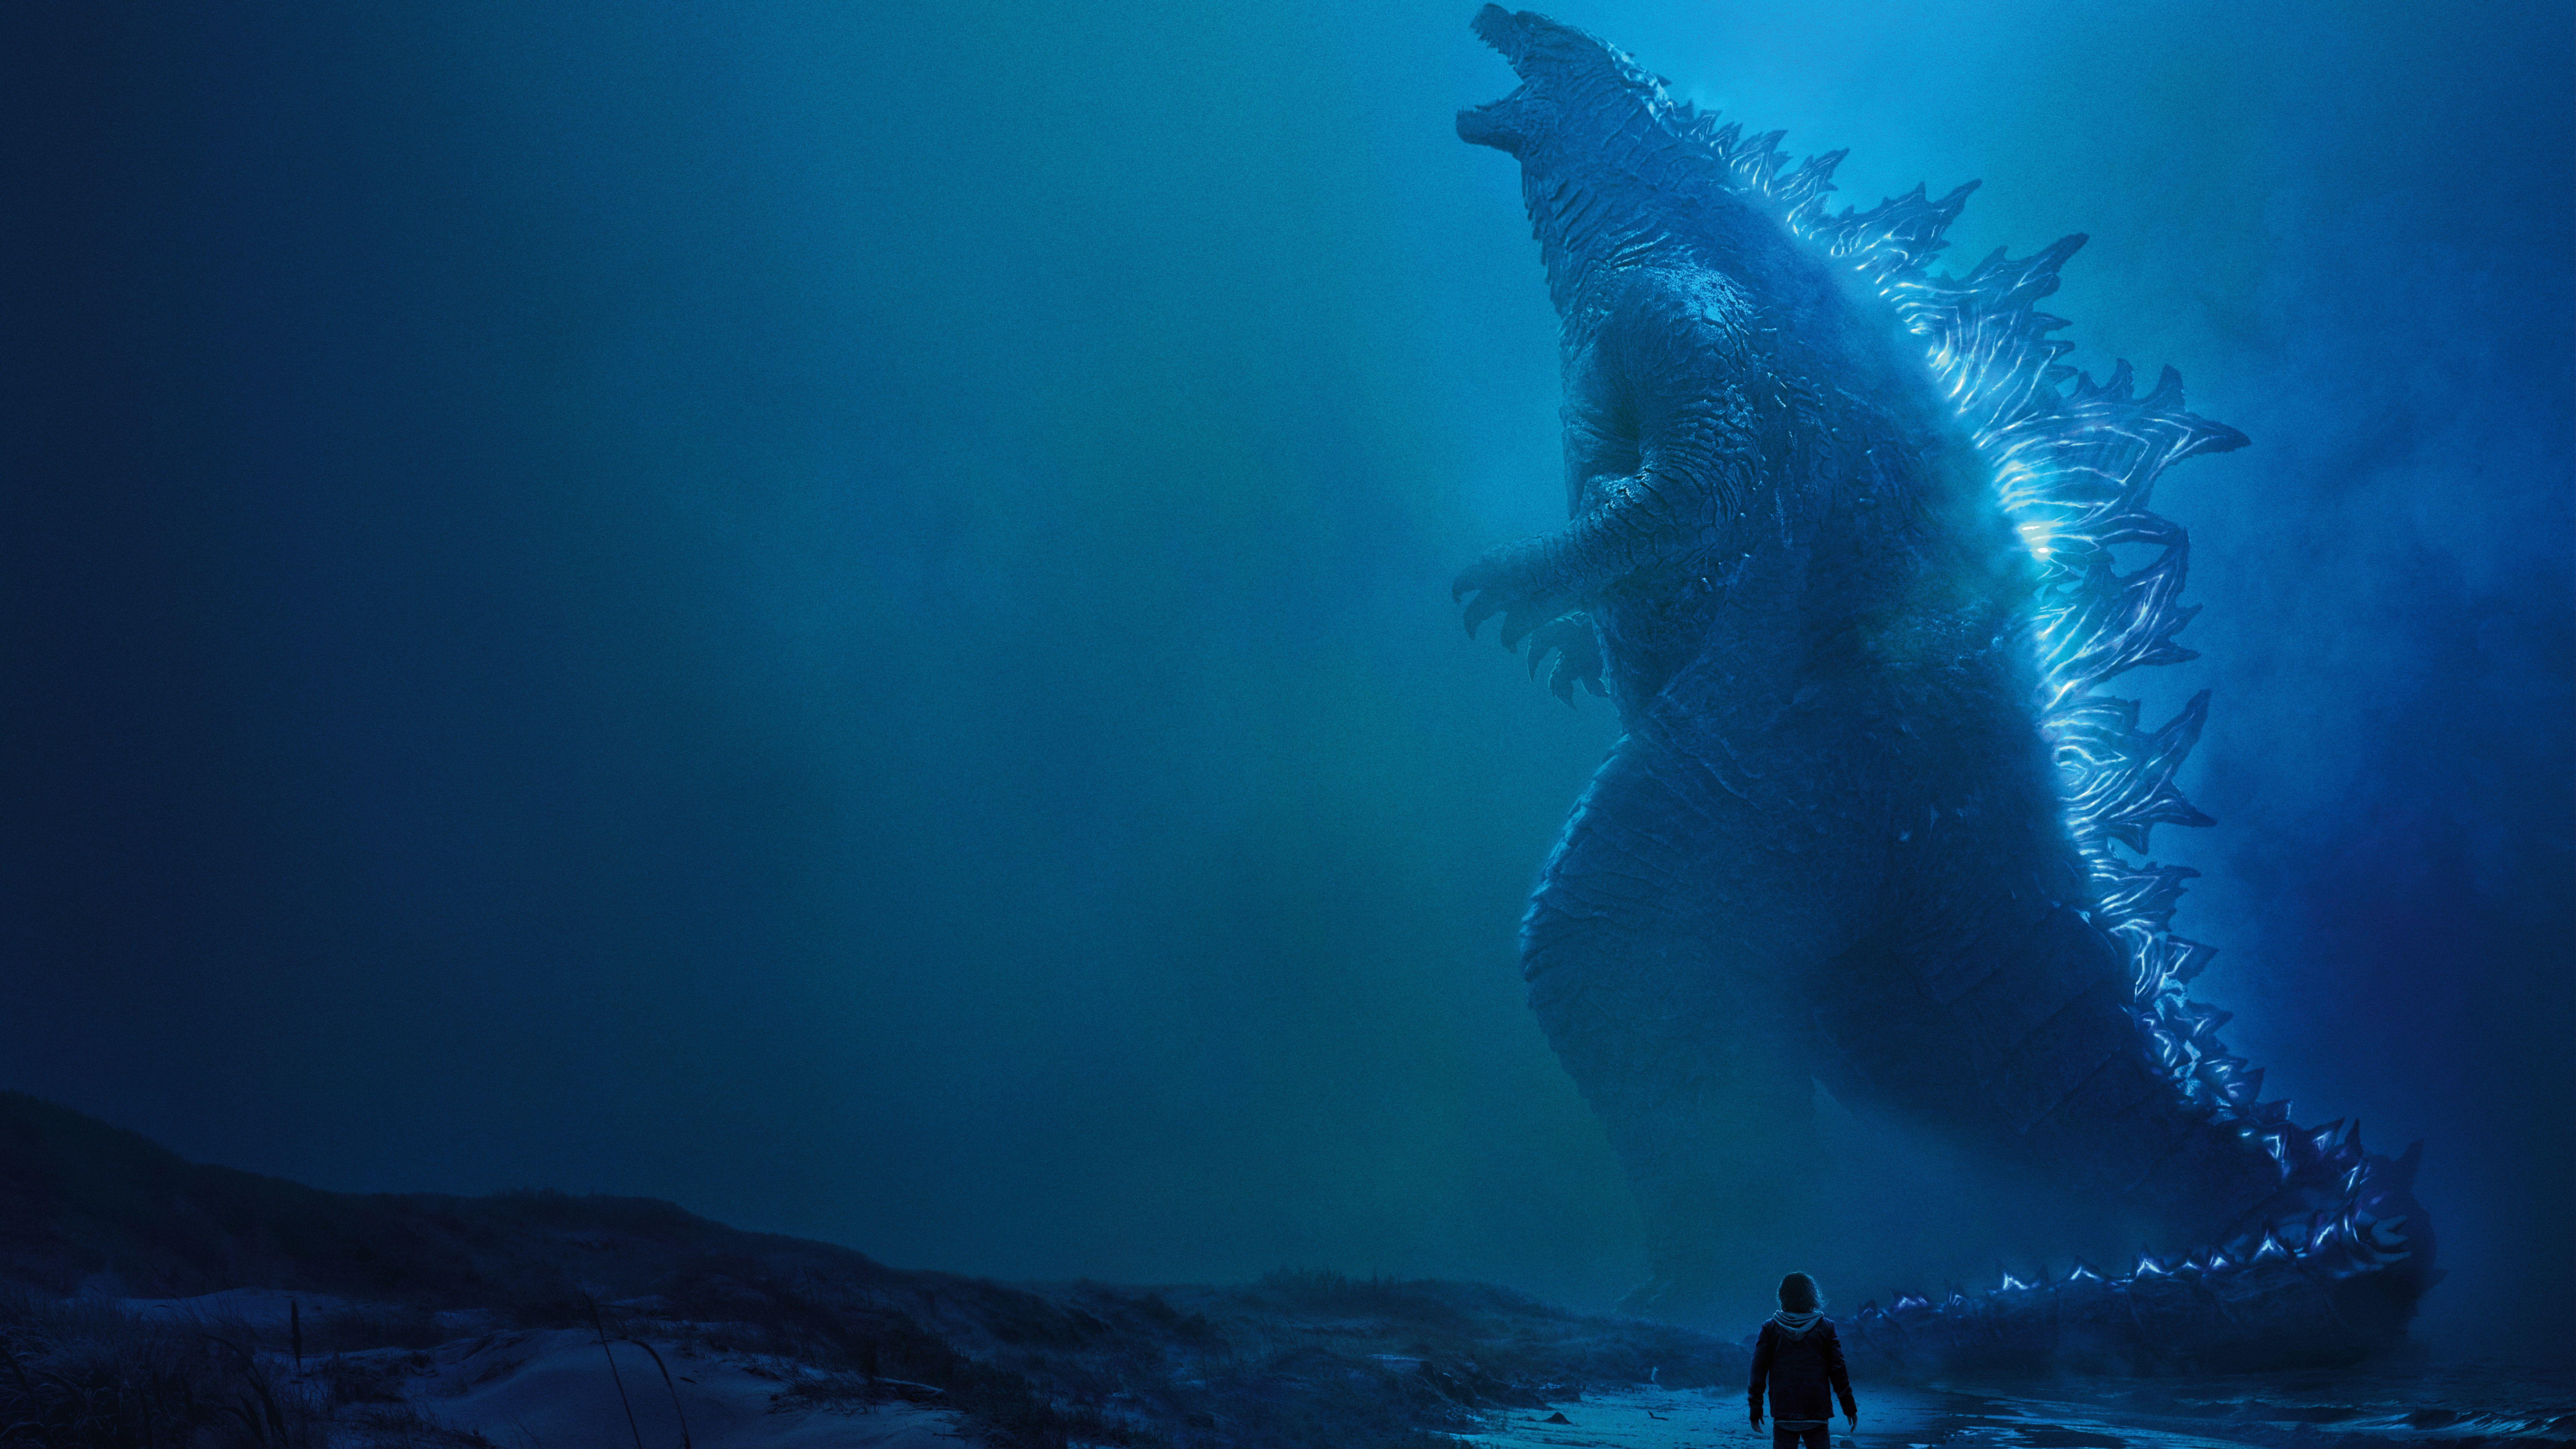 7680x4320 Godzilla King of the Monsters 2019 Hình nền 4K 8K.  HD